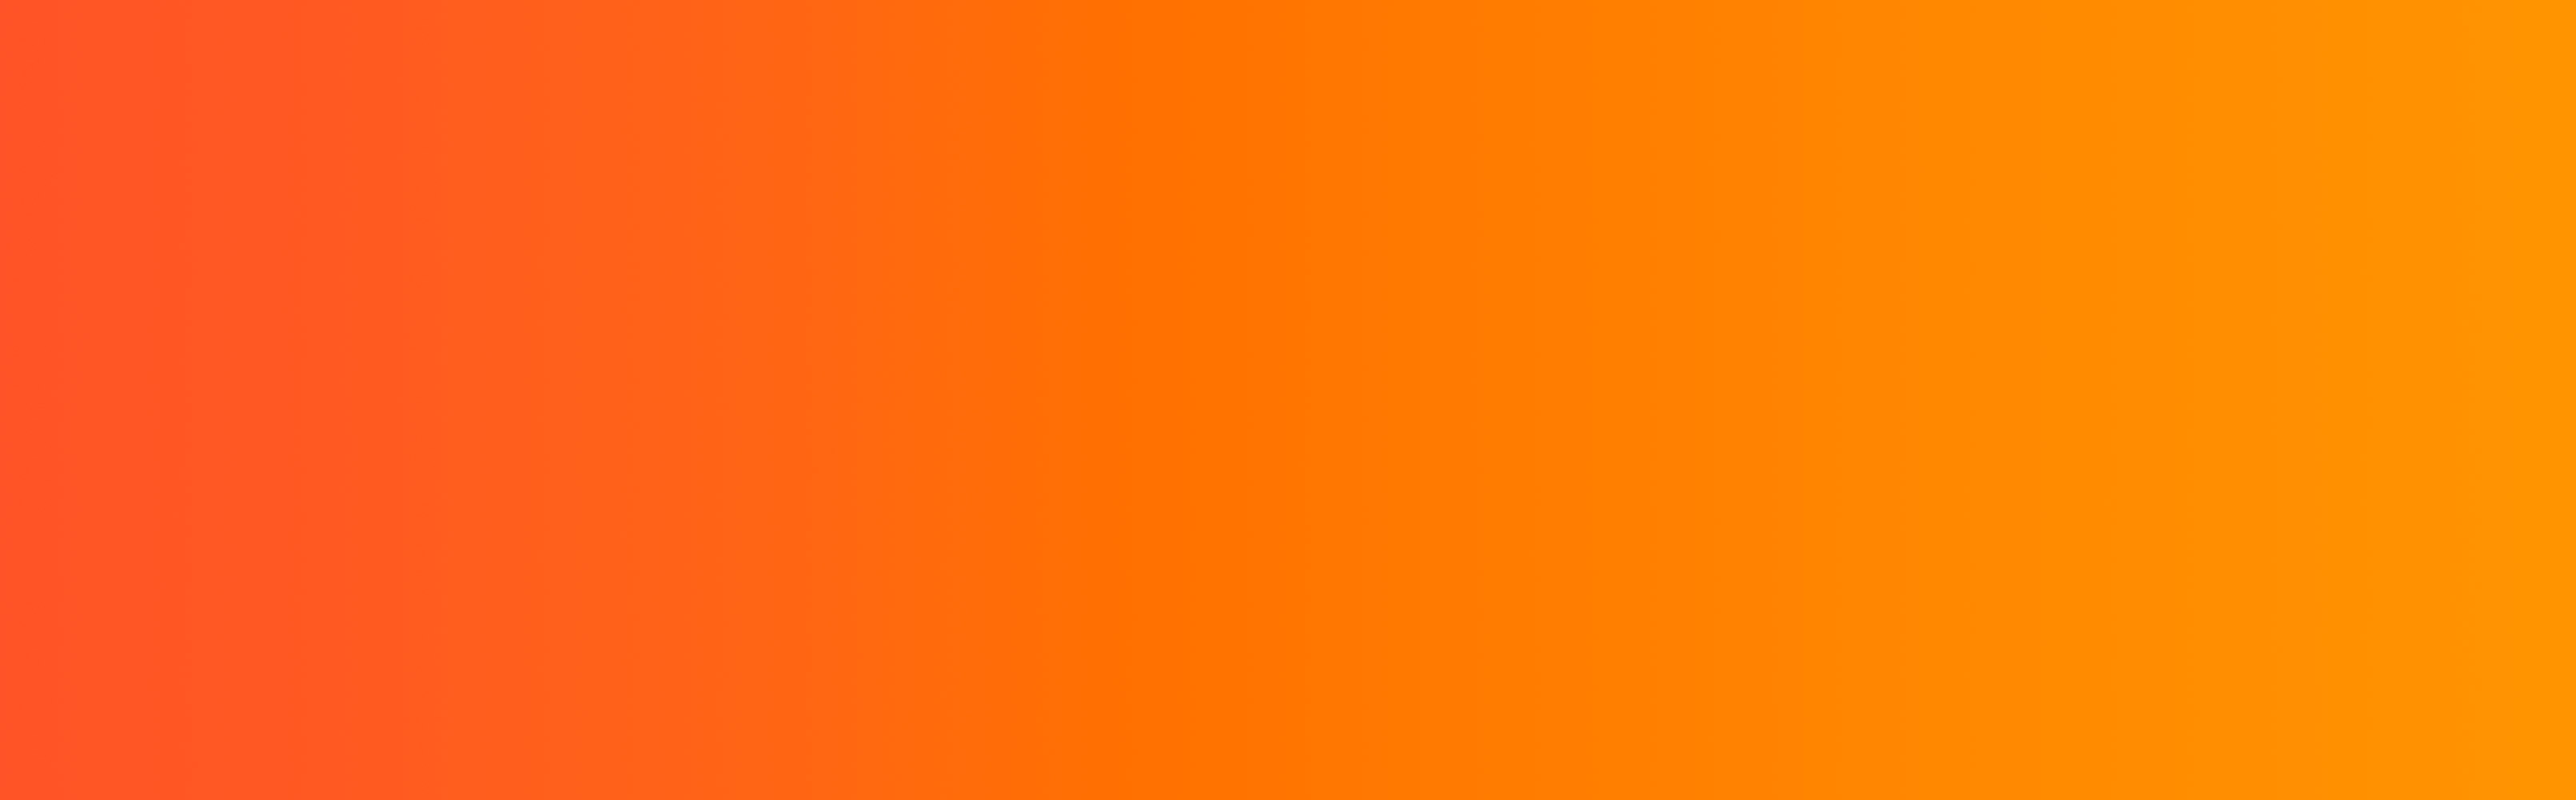 Оранжевый цвет однотонный